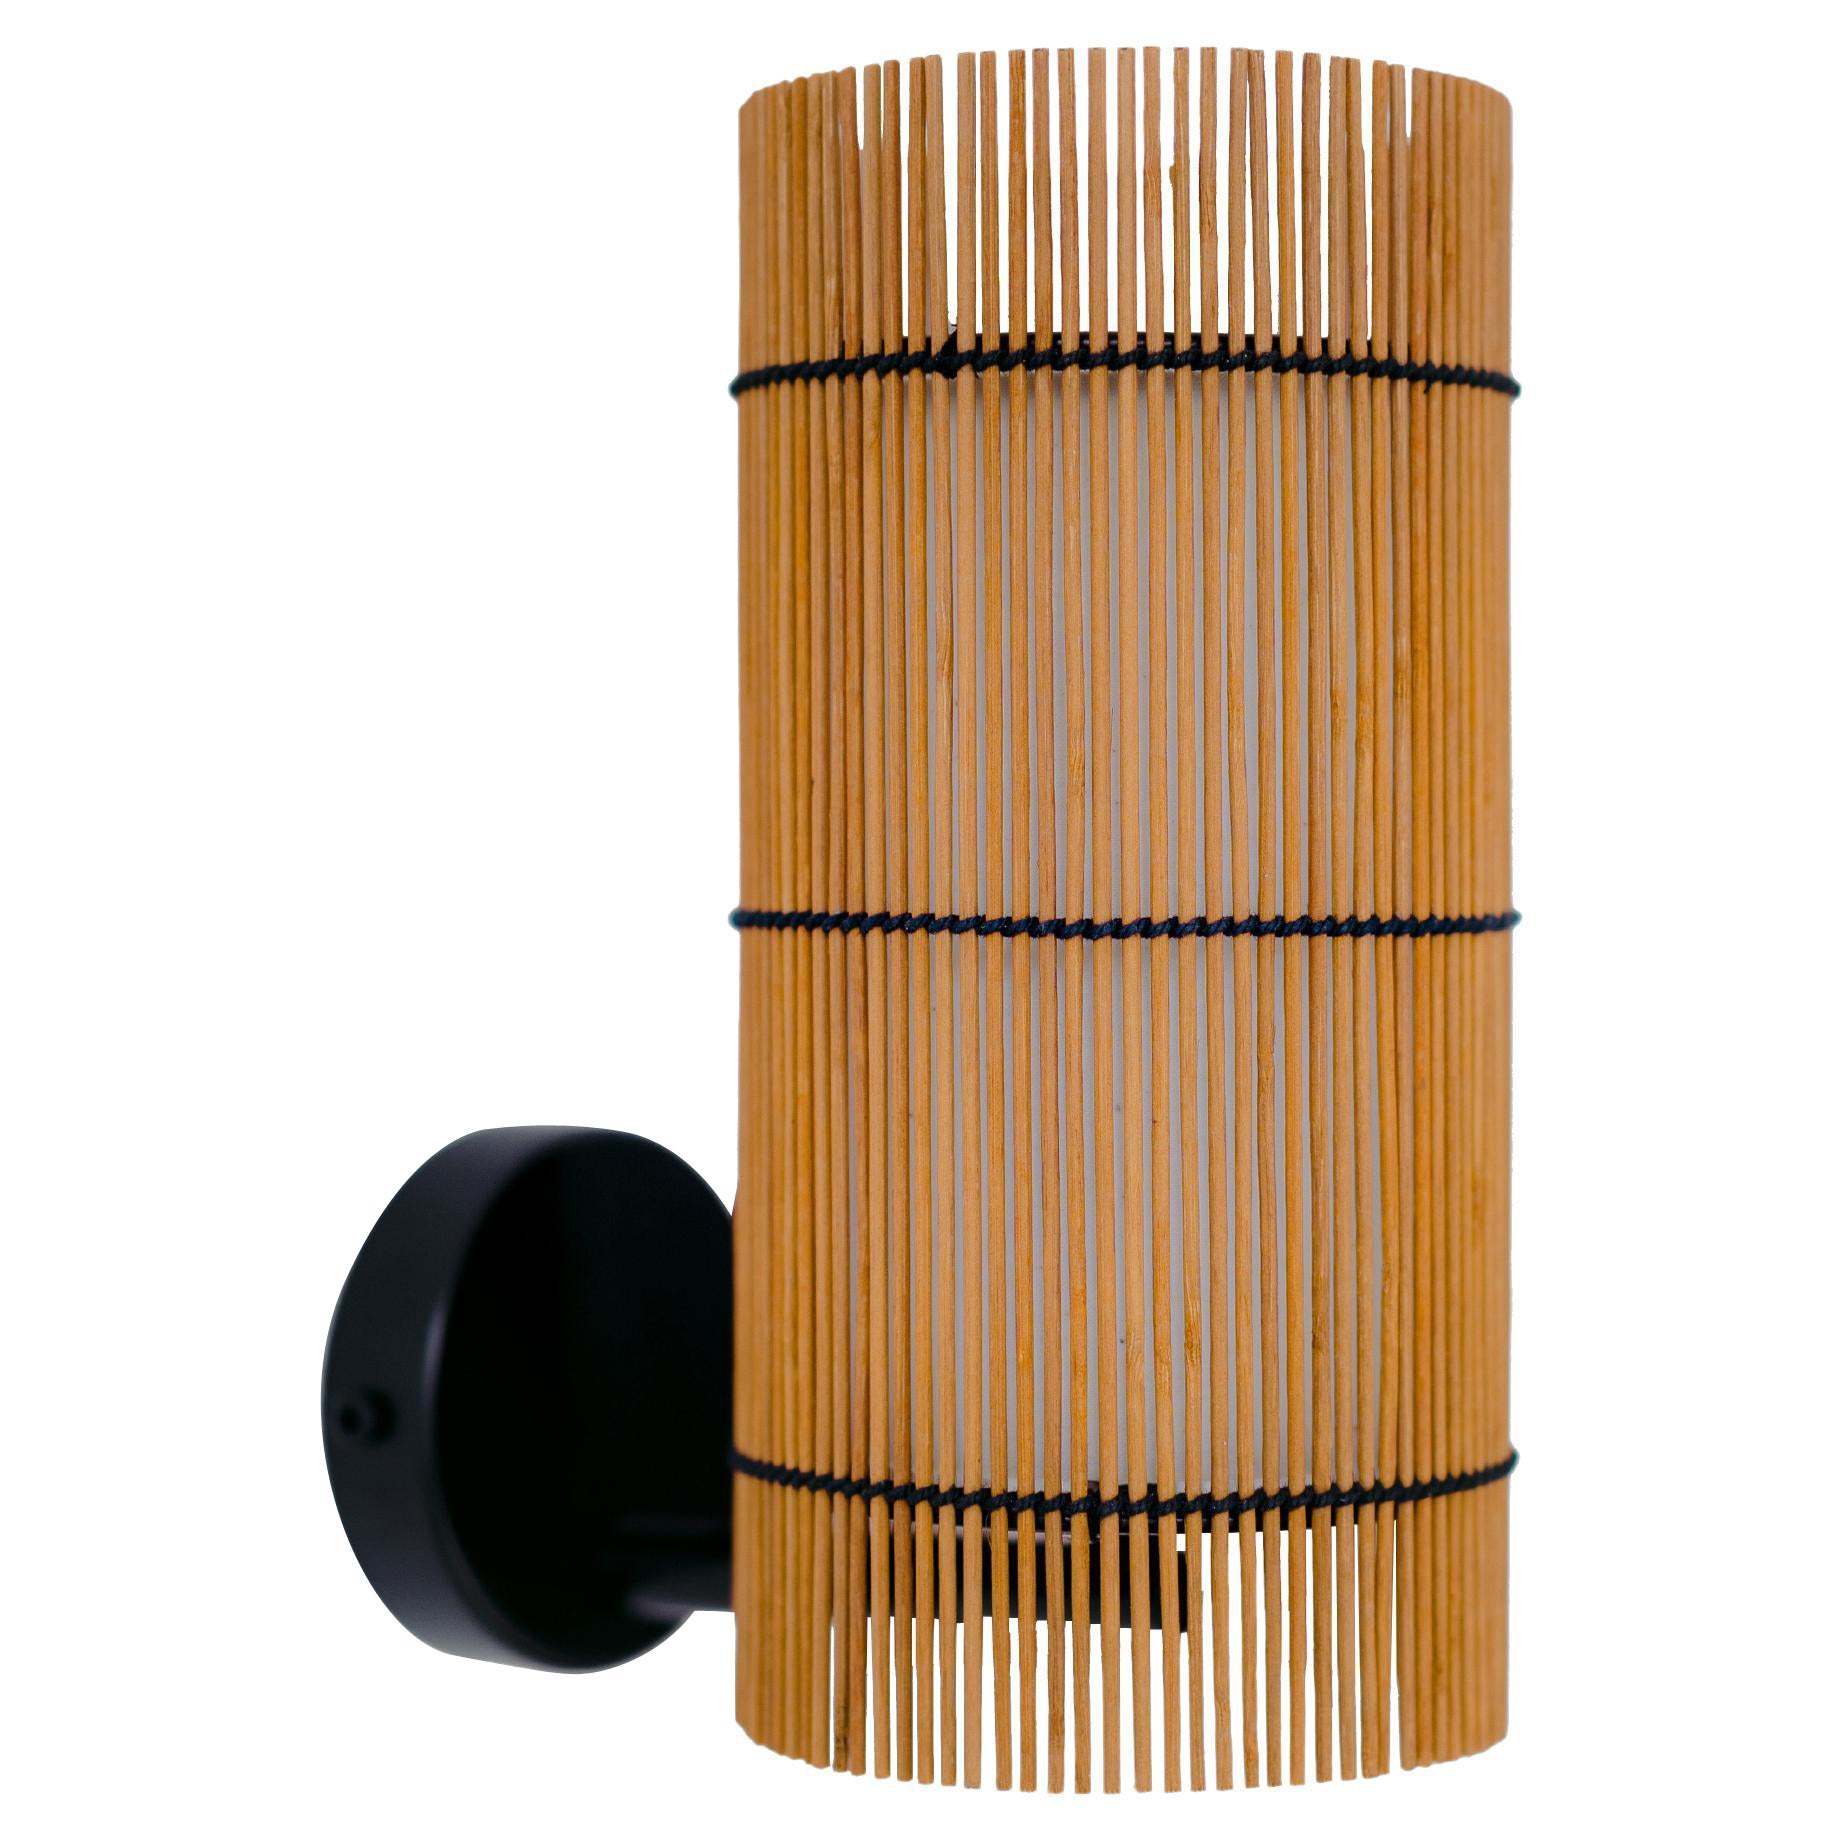 Contemporary, Handgefertigte Wandlampe Sconce, Bambus Kirsche, von Mediterranean Objects